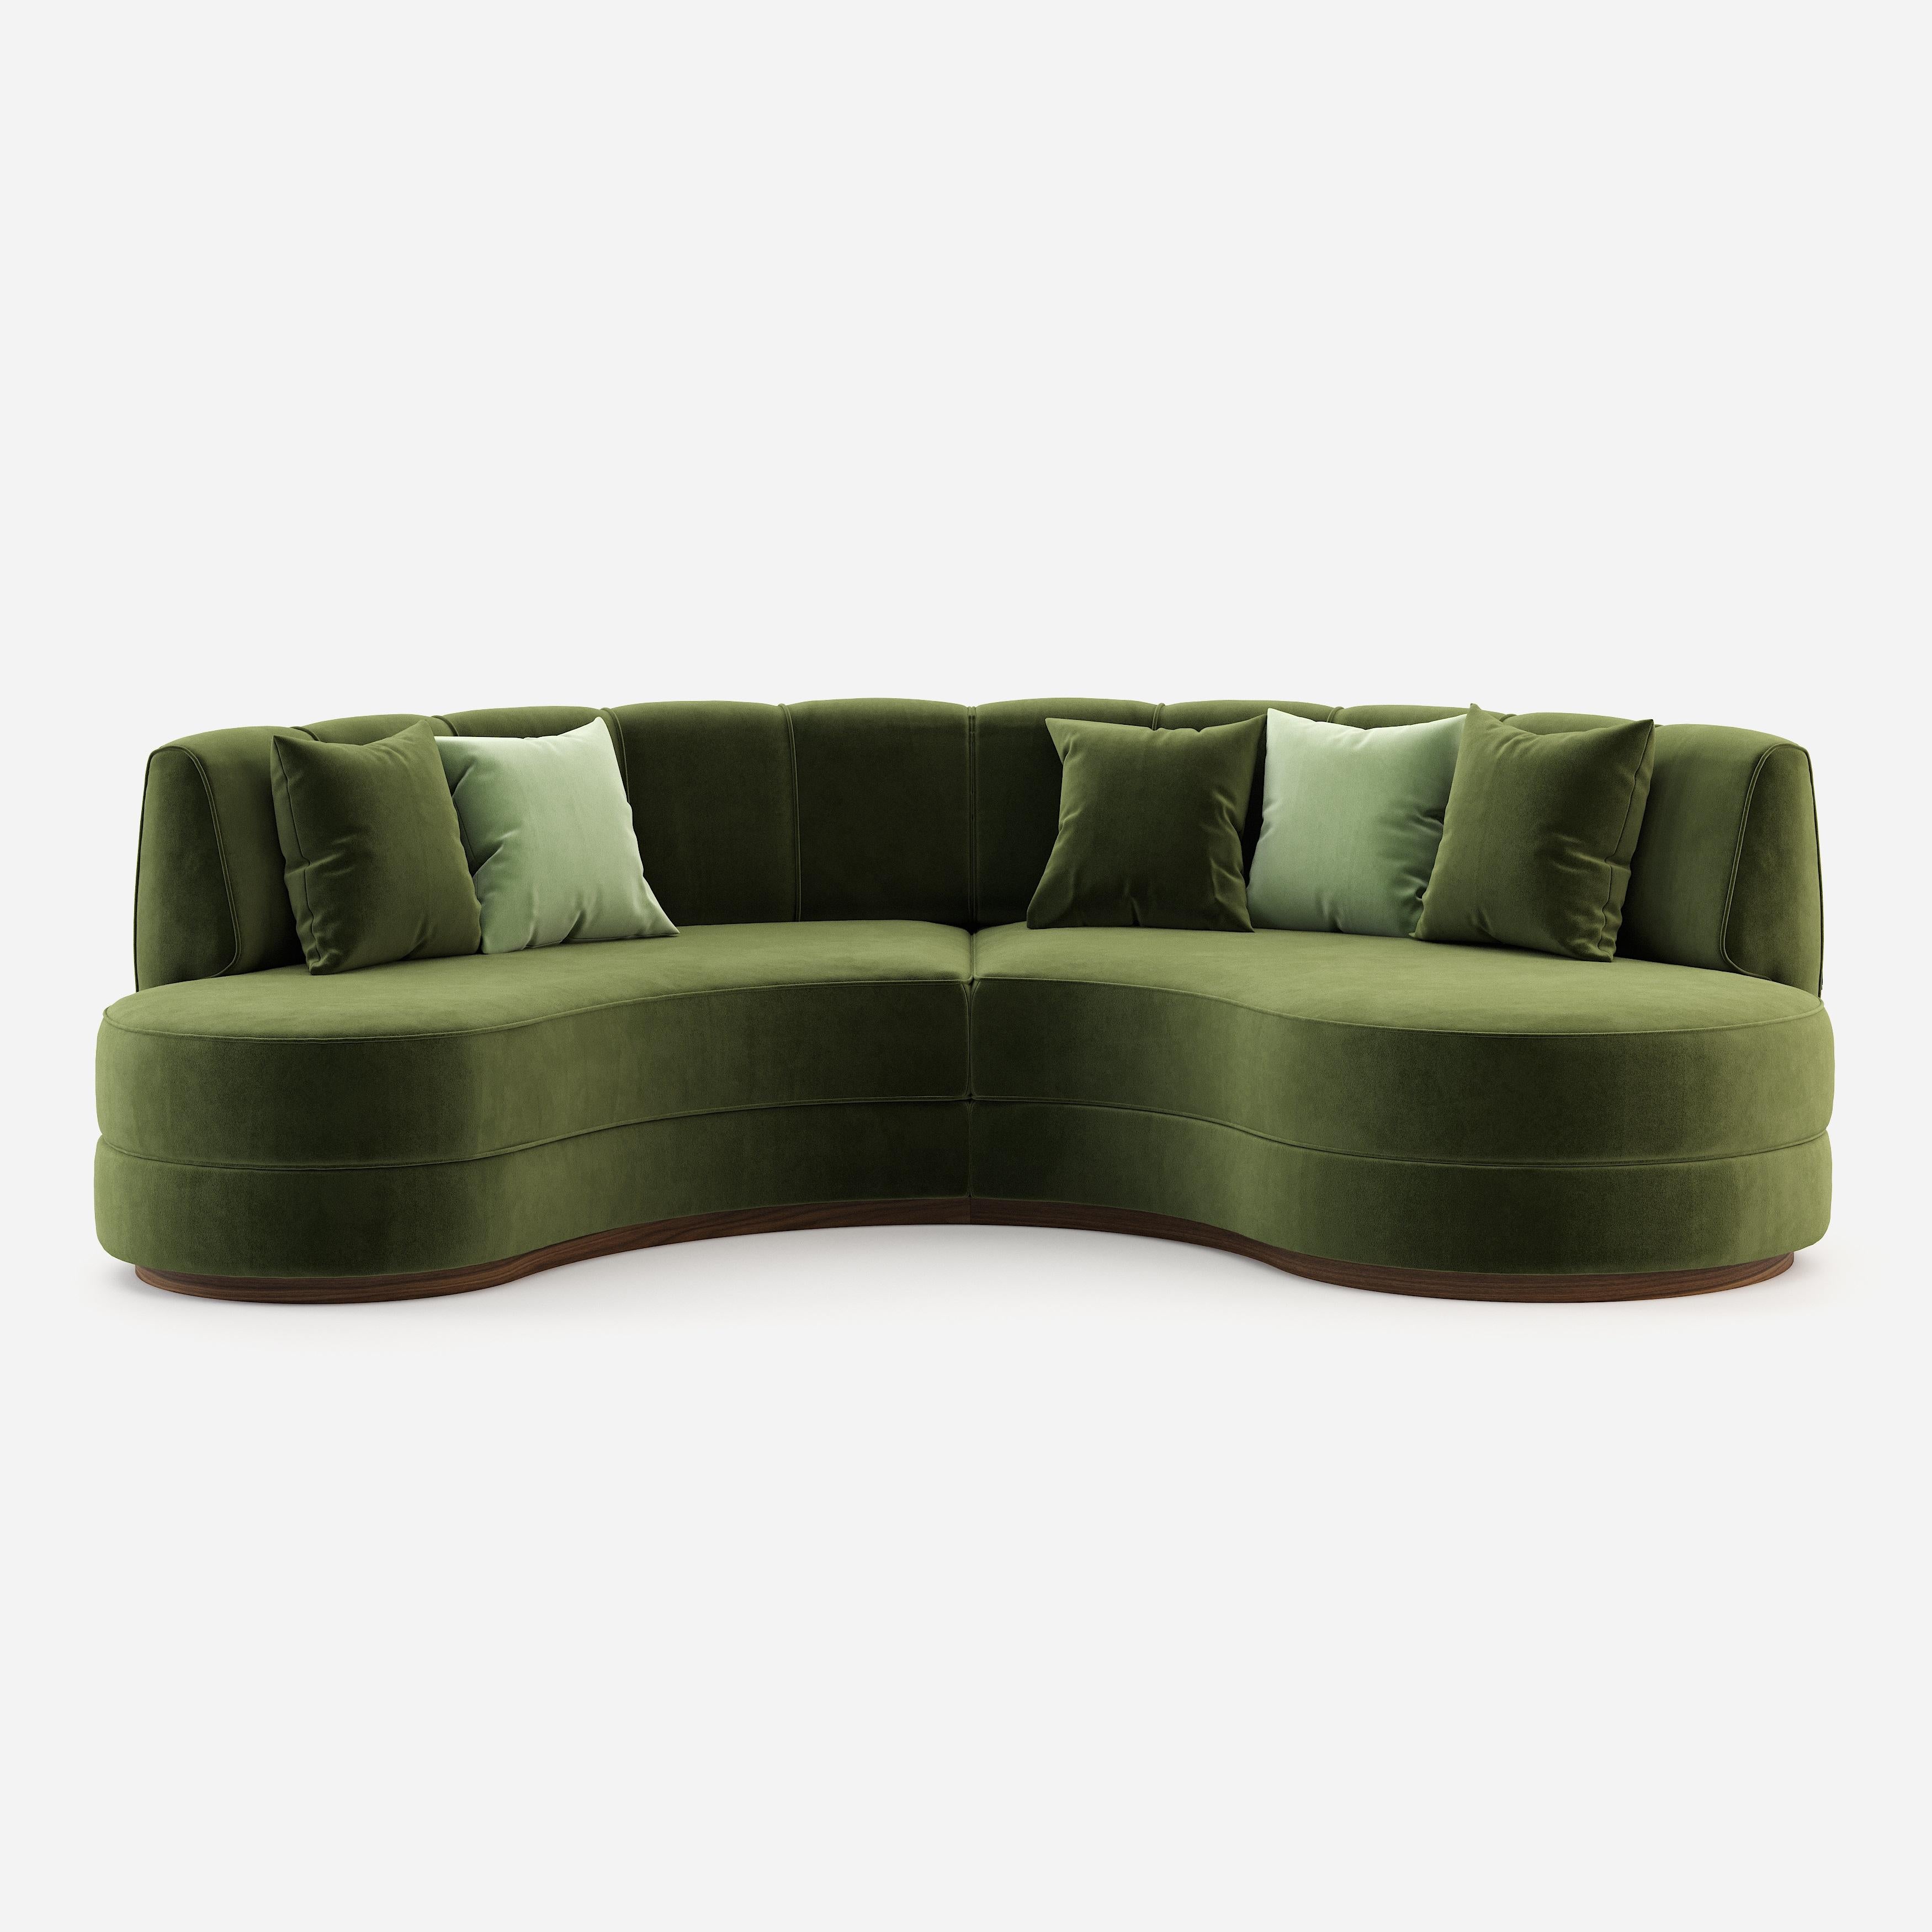 Das Sofa inspiriert sich an der Natur, wo Grün das vorherrschende Element ist und wo Täler und Hügel vorherrschen. Die Details des Artikels machen ihn zu einem perfekten Blickfang für jede moderne oder klassische Einrichtung.
Dieses Sofa wird in